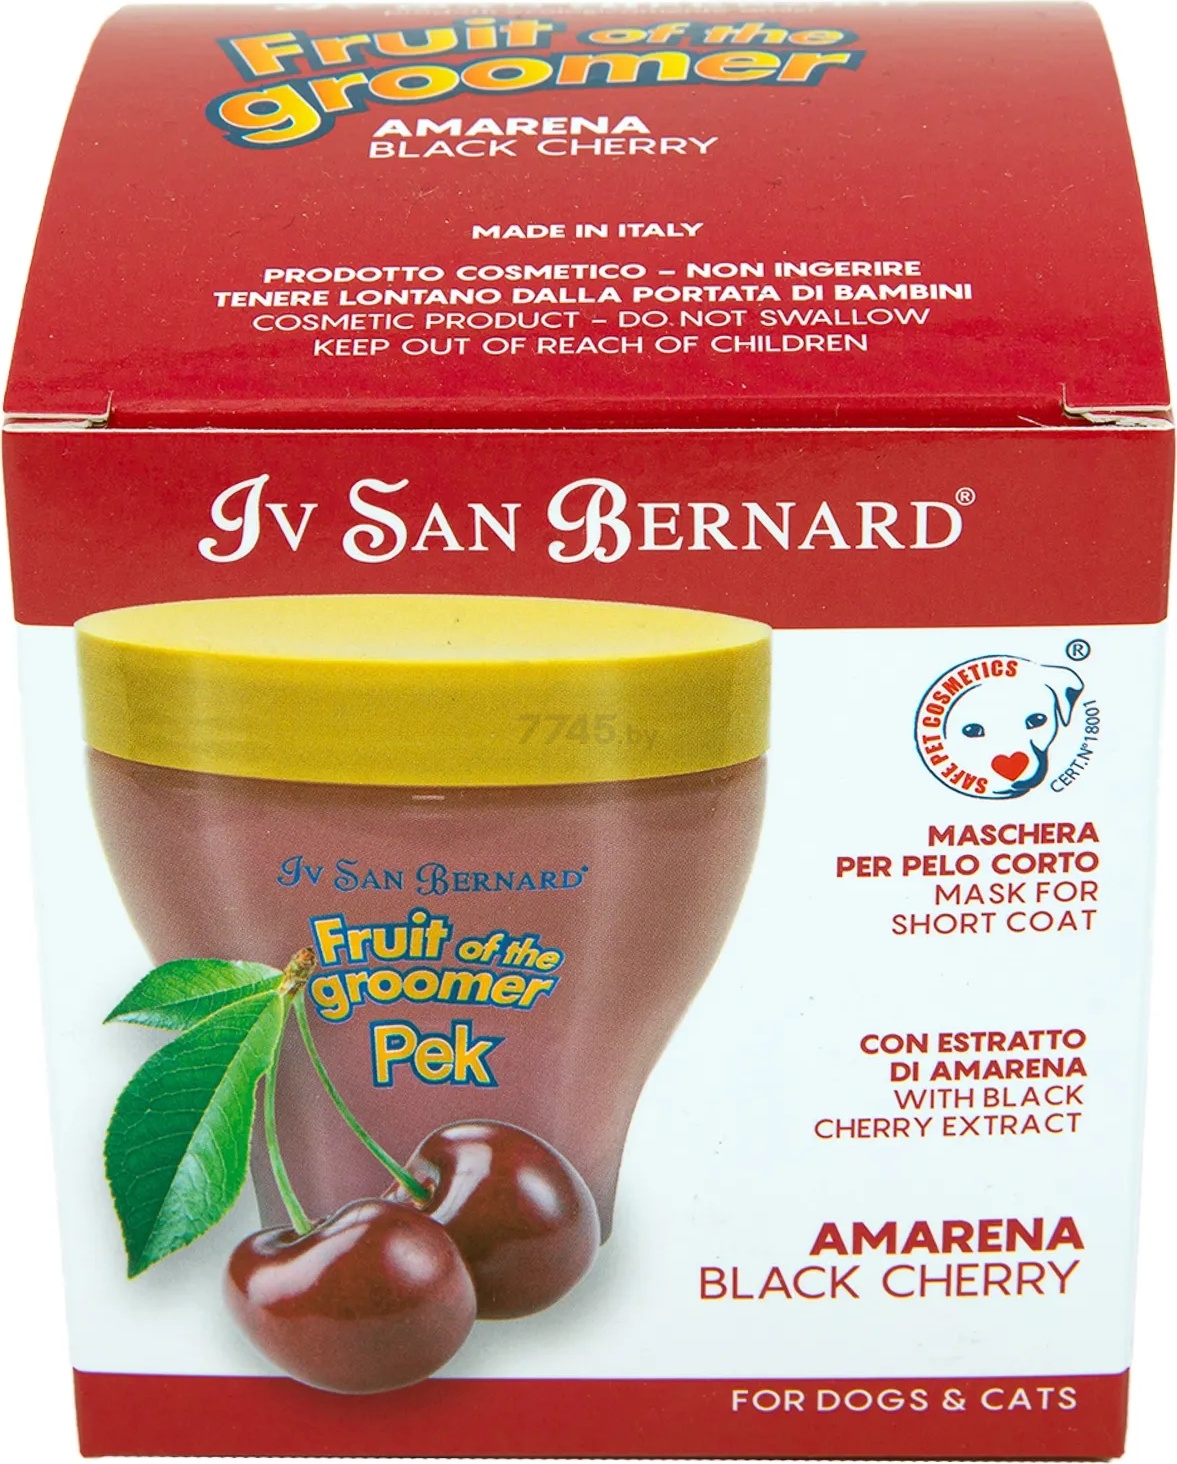 Маска для короткошерстных животных IV SAN BERNARD Fruit Of The Groomer Black Cherry протеин шелка 250 мл (NMASAM250) - Фото 5